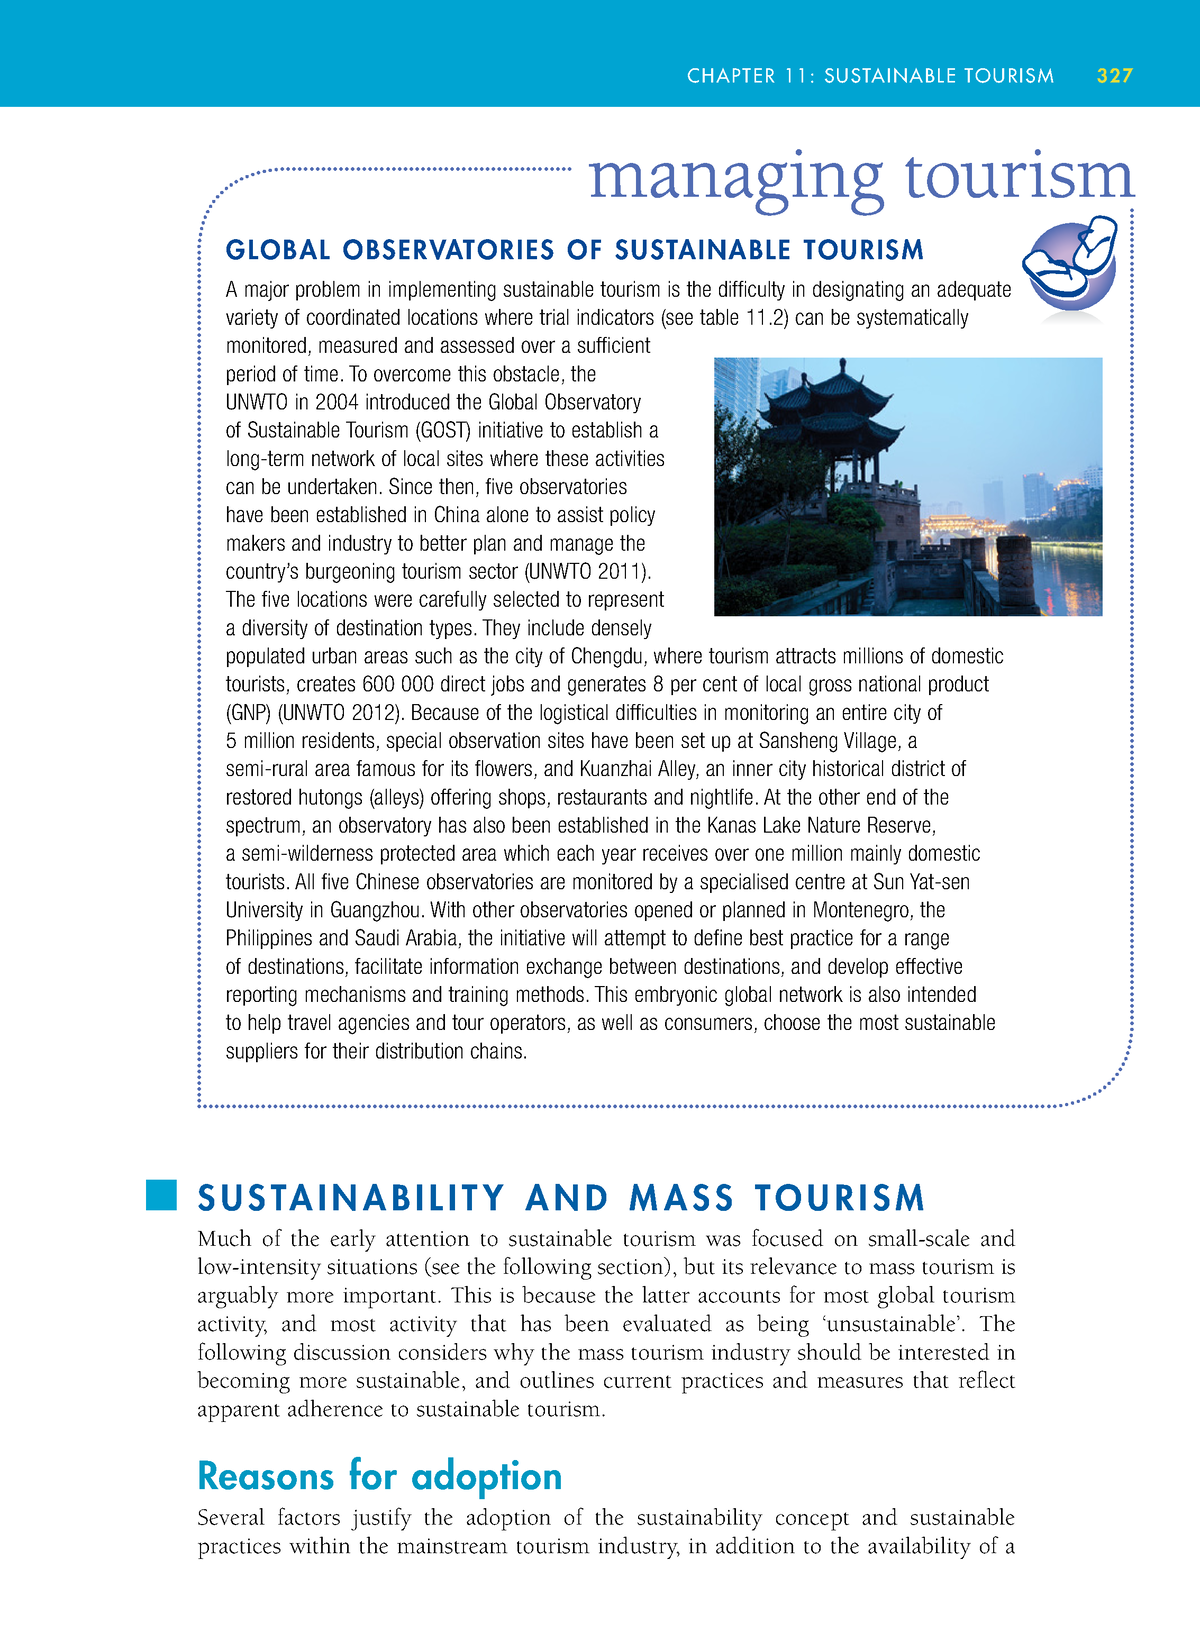 tourism management lecture notes